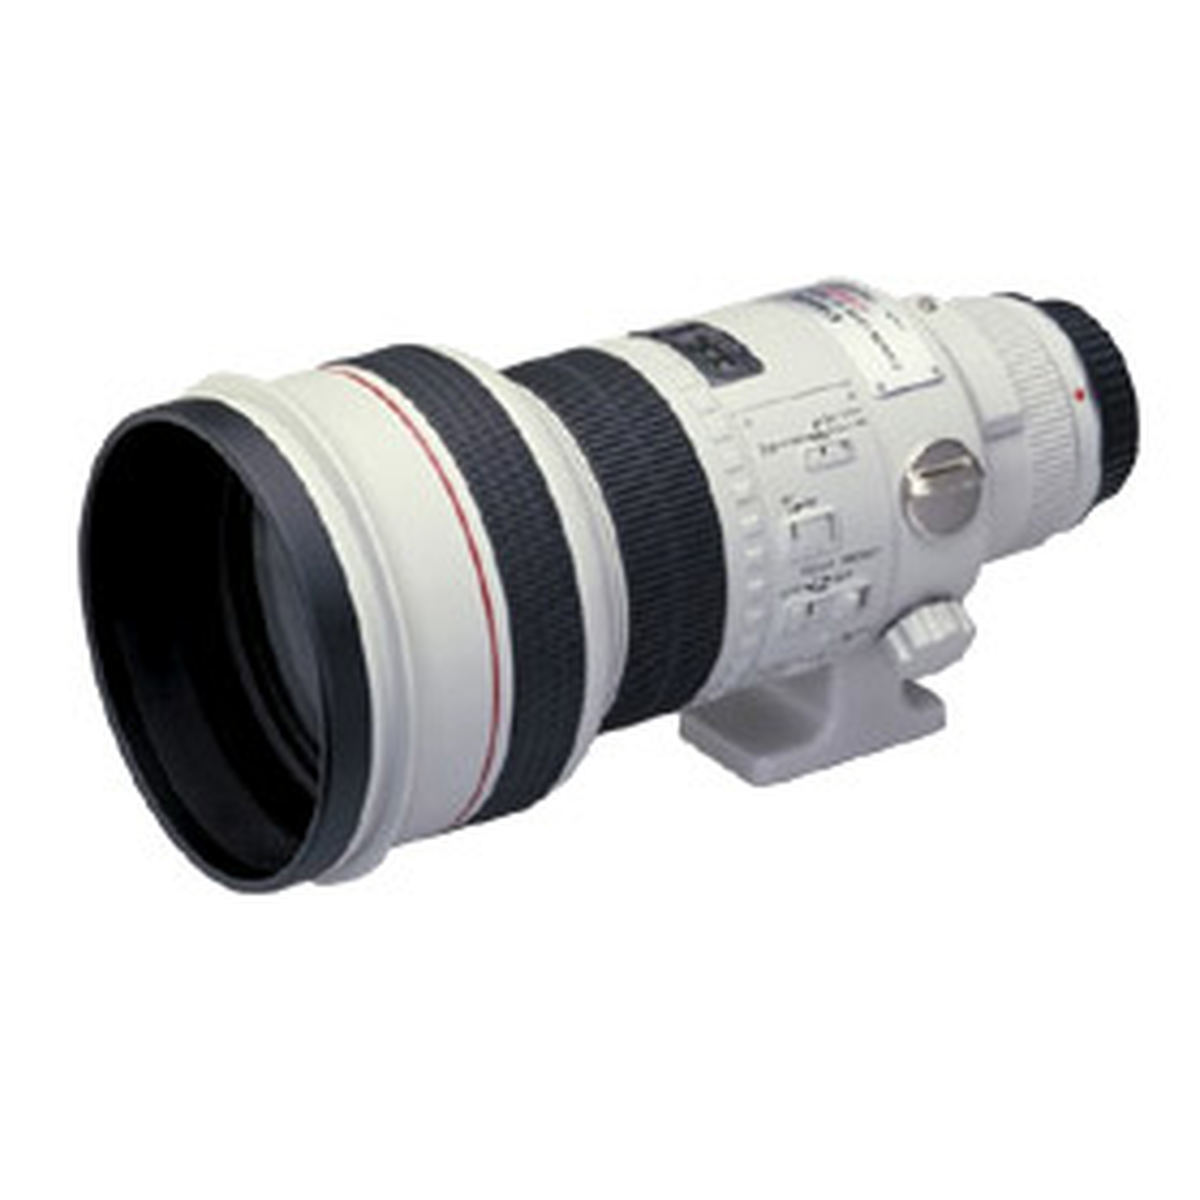 Canon EF 300mm f/2.8 L USM : Caratteristiche e Opinioni | JuzaPhoto